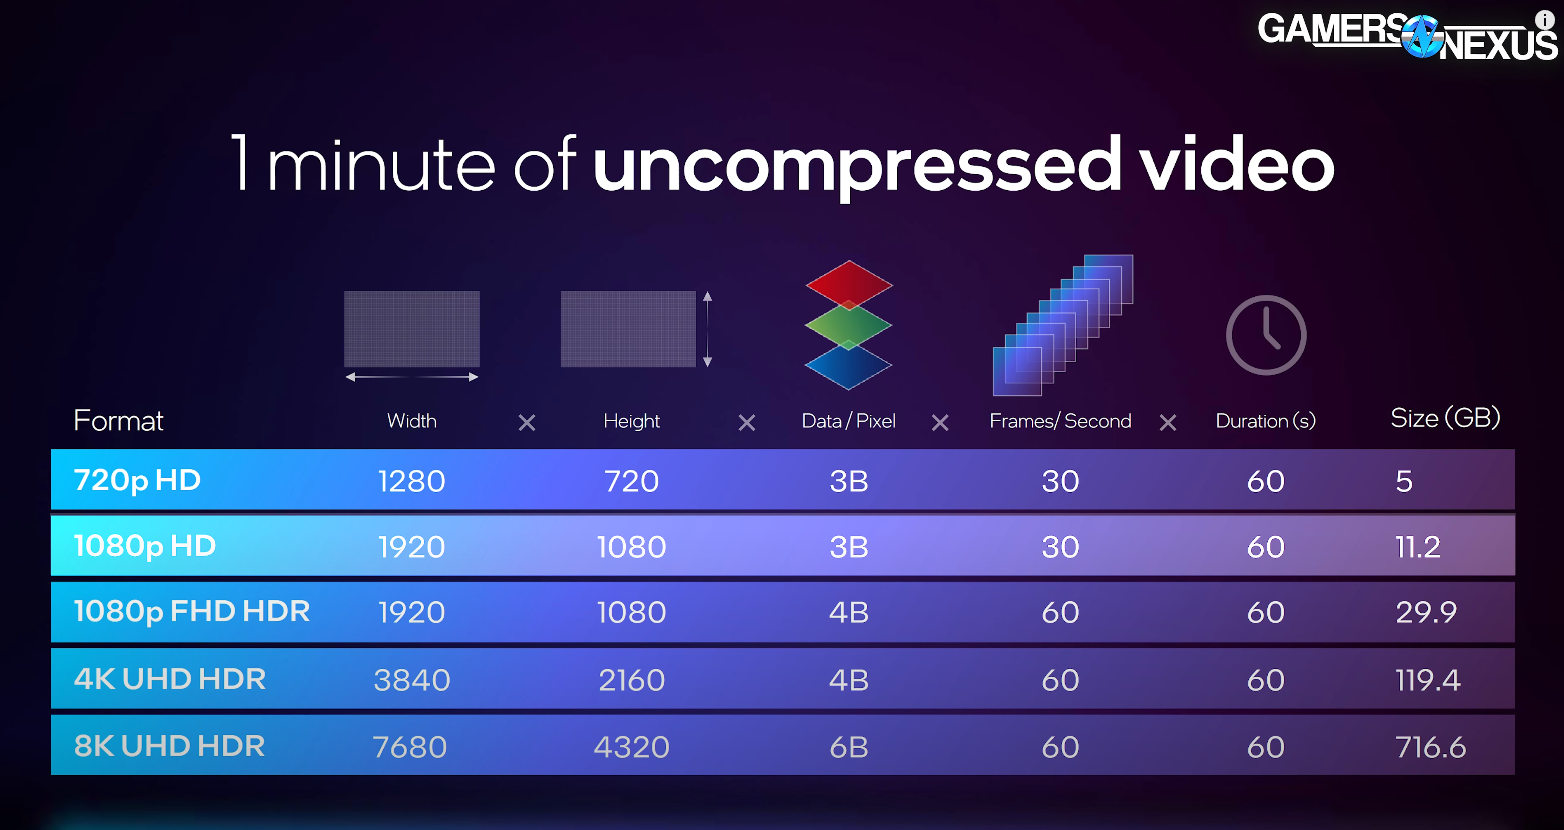 Video compression